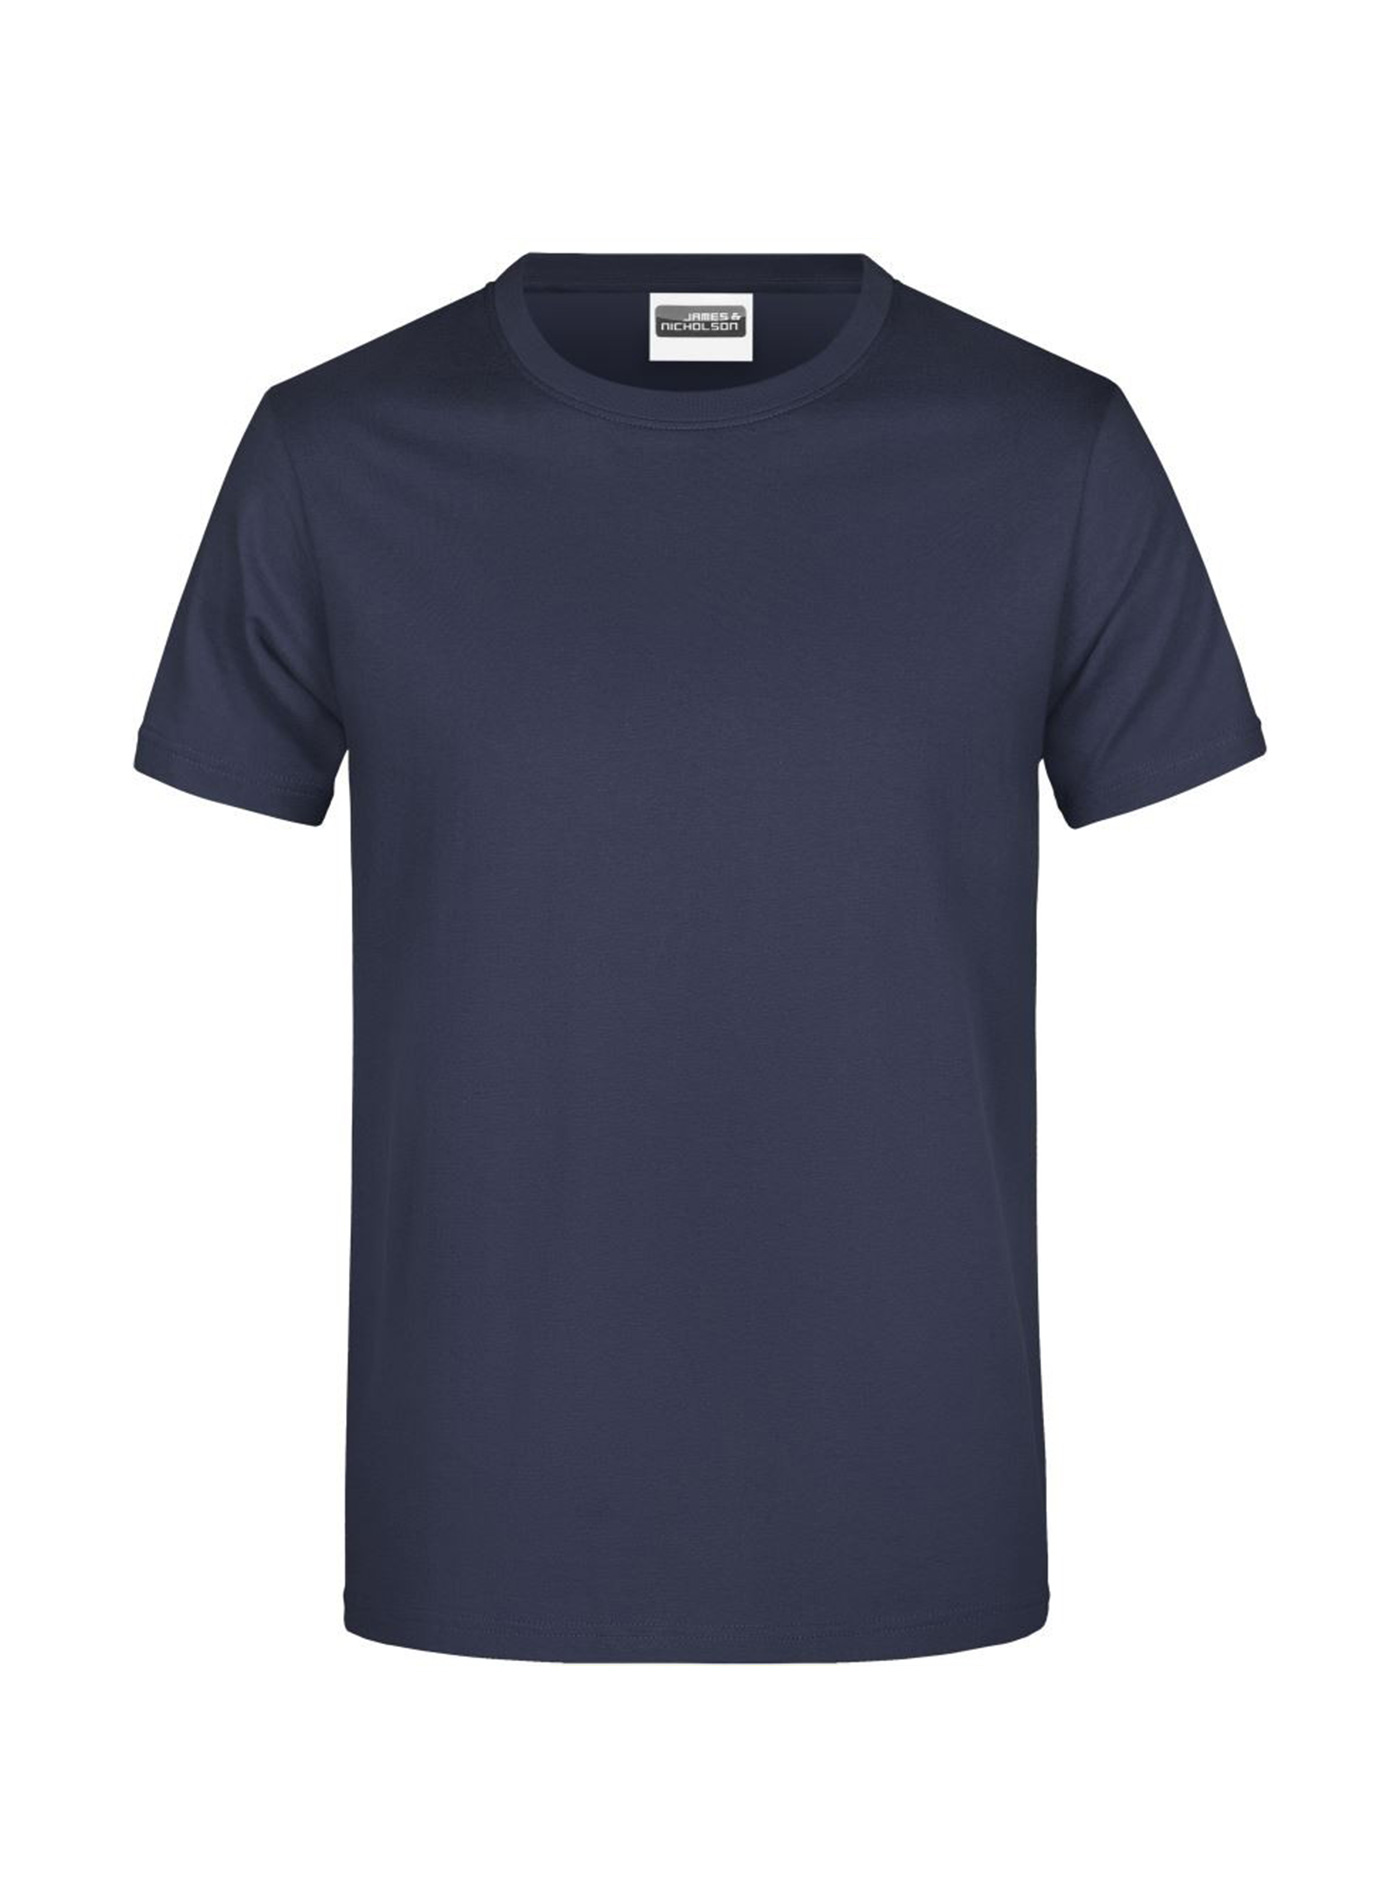 Pánské tričko James & Nicholson Heavy - Námořní modrá L